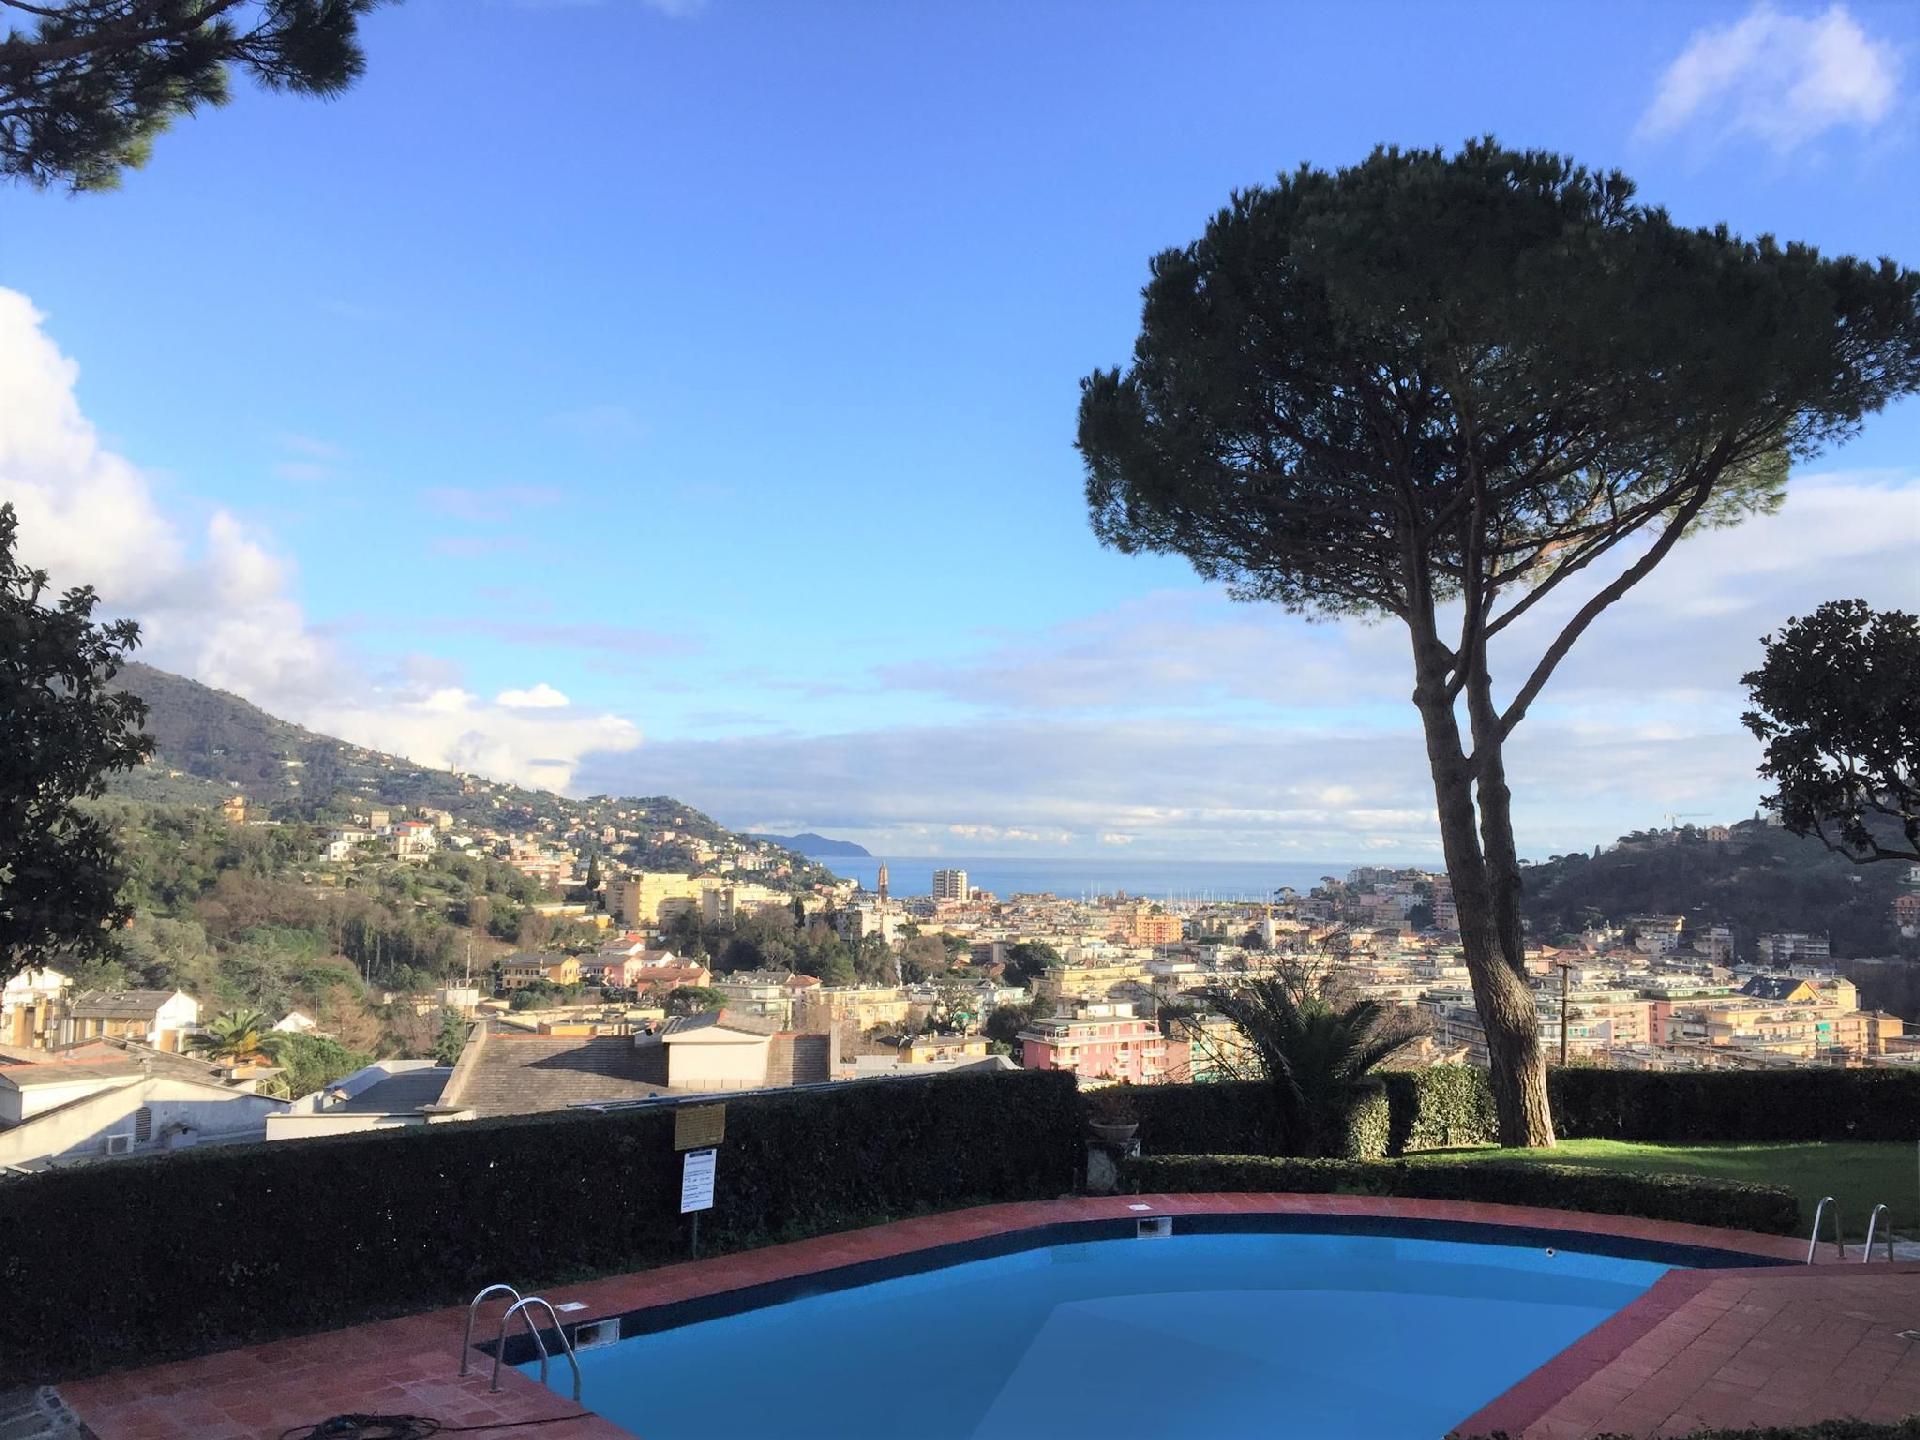 Ferienwohnung für 4 Personen ca. 60 m² i Ferienwohnung  Golf von Genua